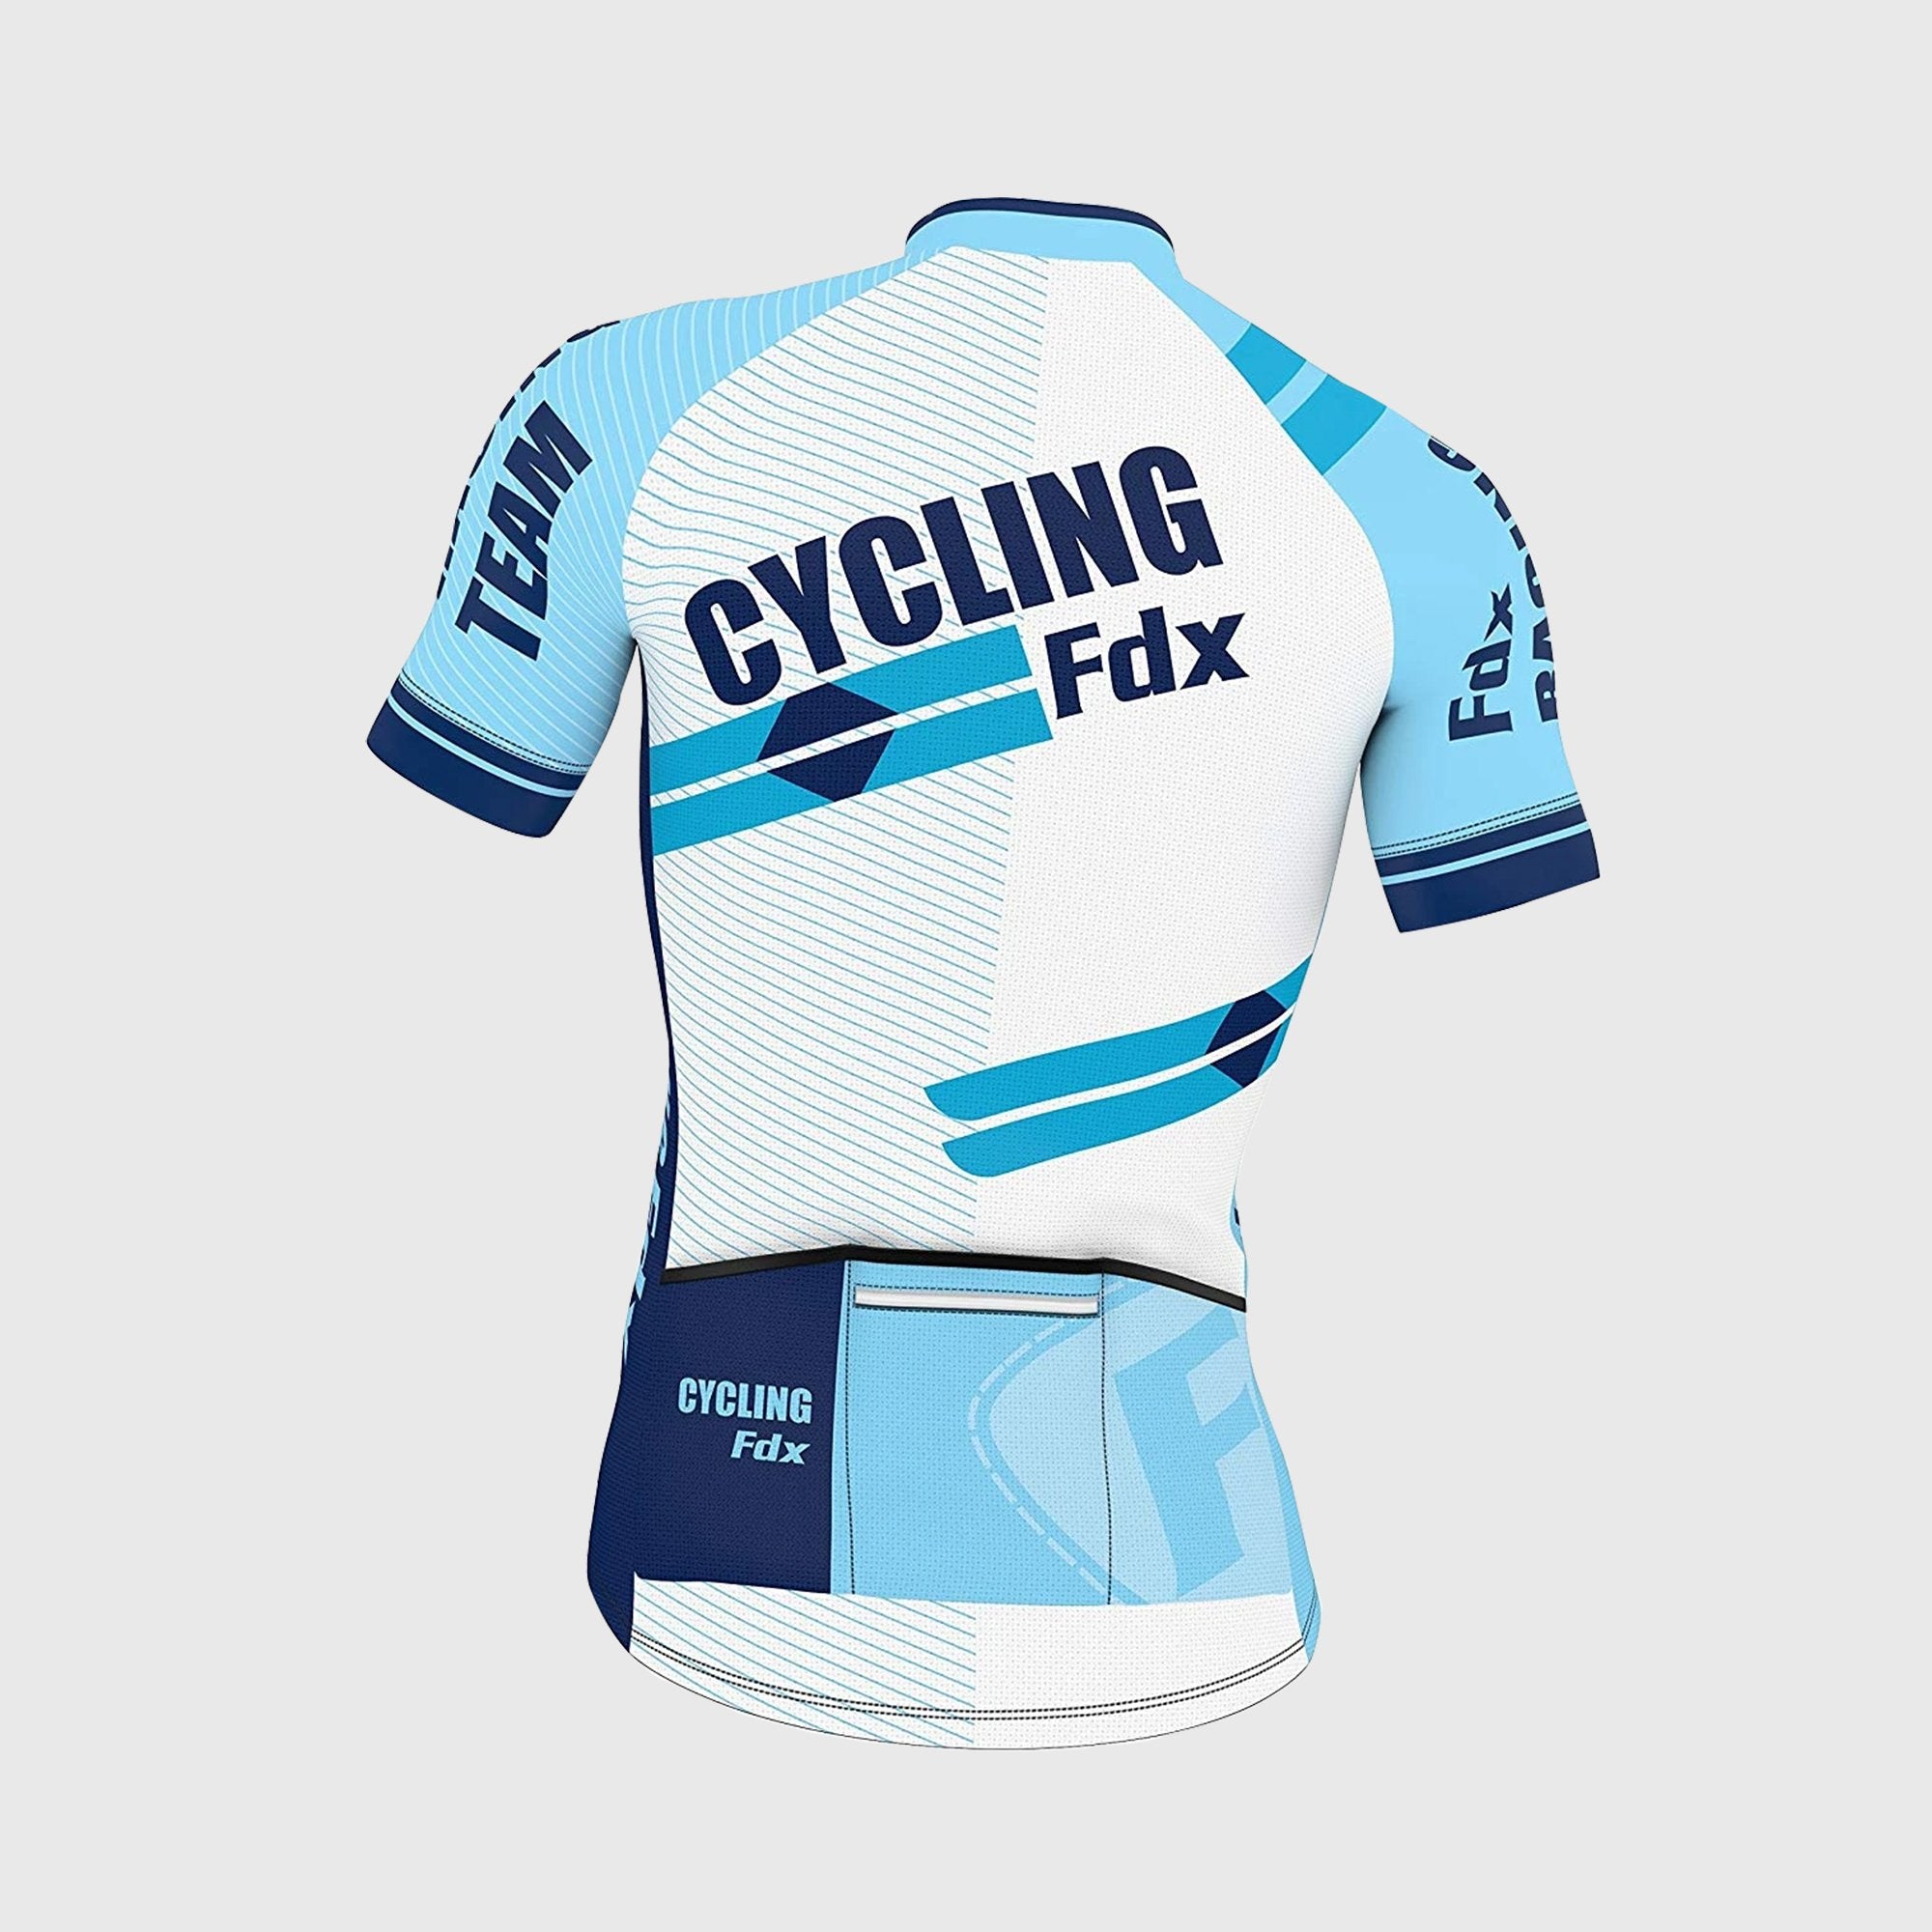 Fdx Pace Blue Men's Short Sleeve Summer Cycling Jersey, XL / Blue